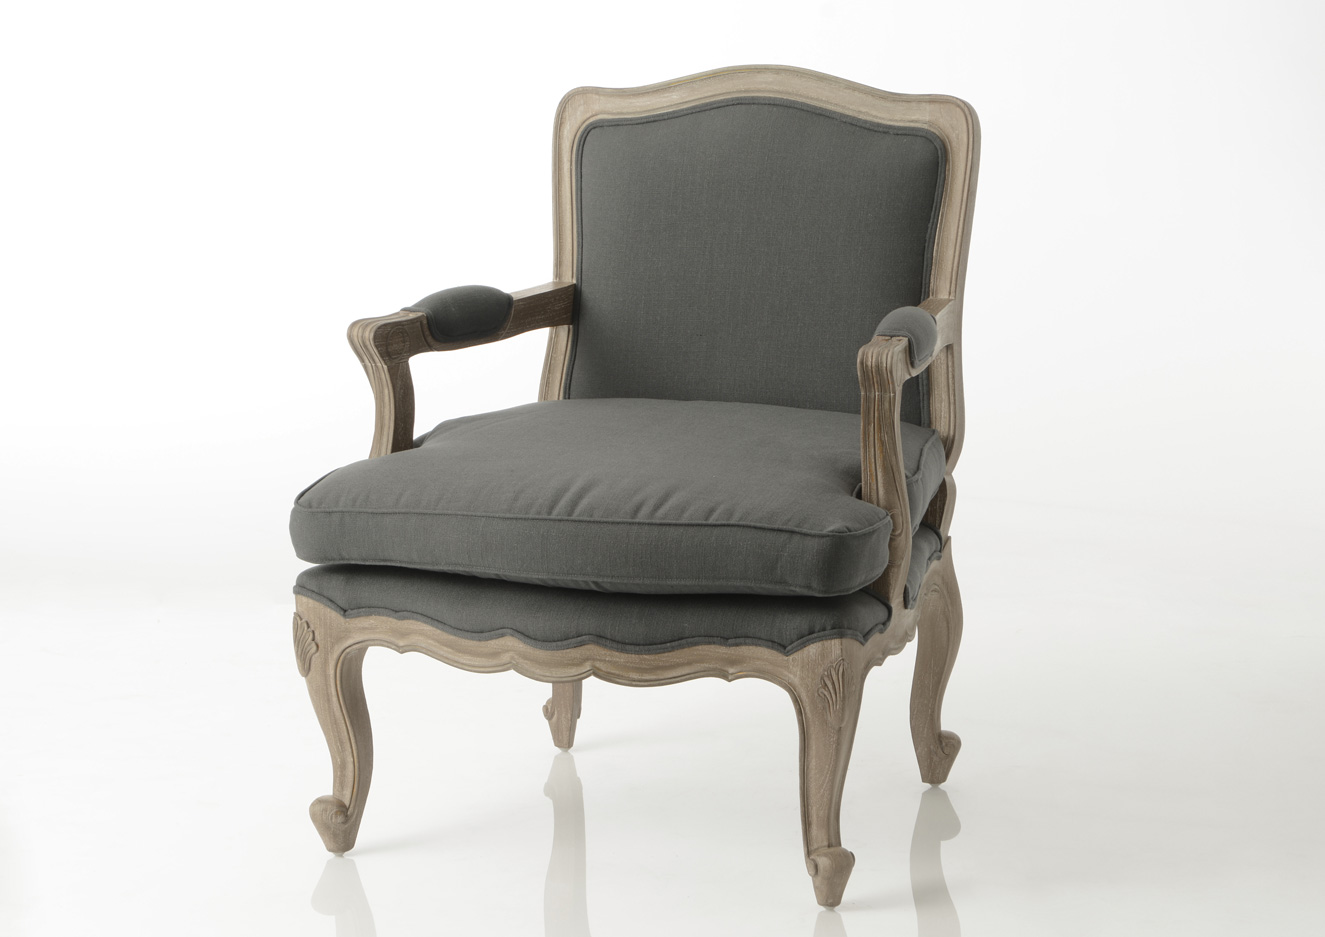 Esprit d'Autrefois revendeur Amadeus sur Orléans, vous propose le fauteuil bergere gris, livraison à votre domicile